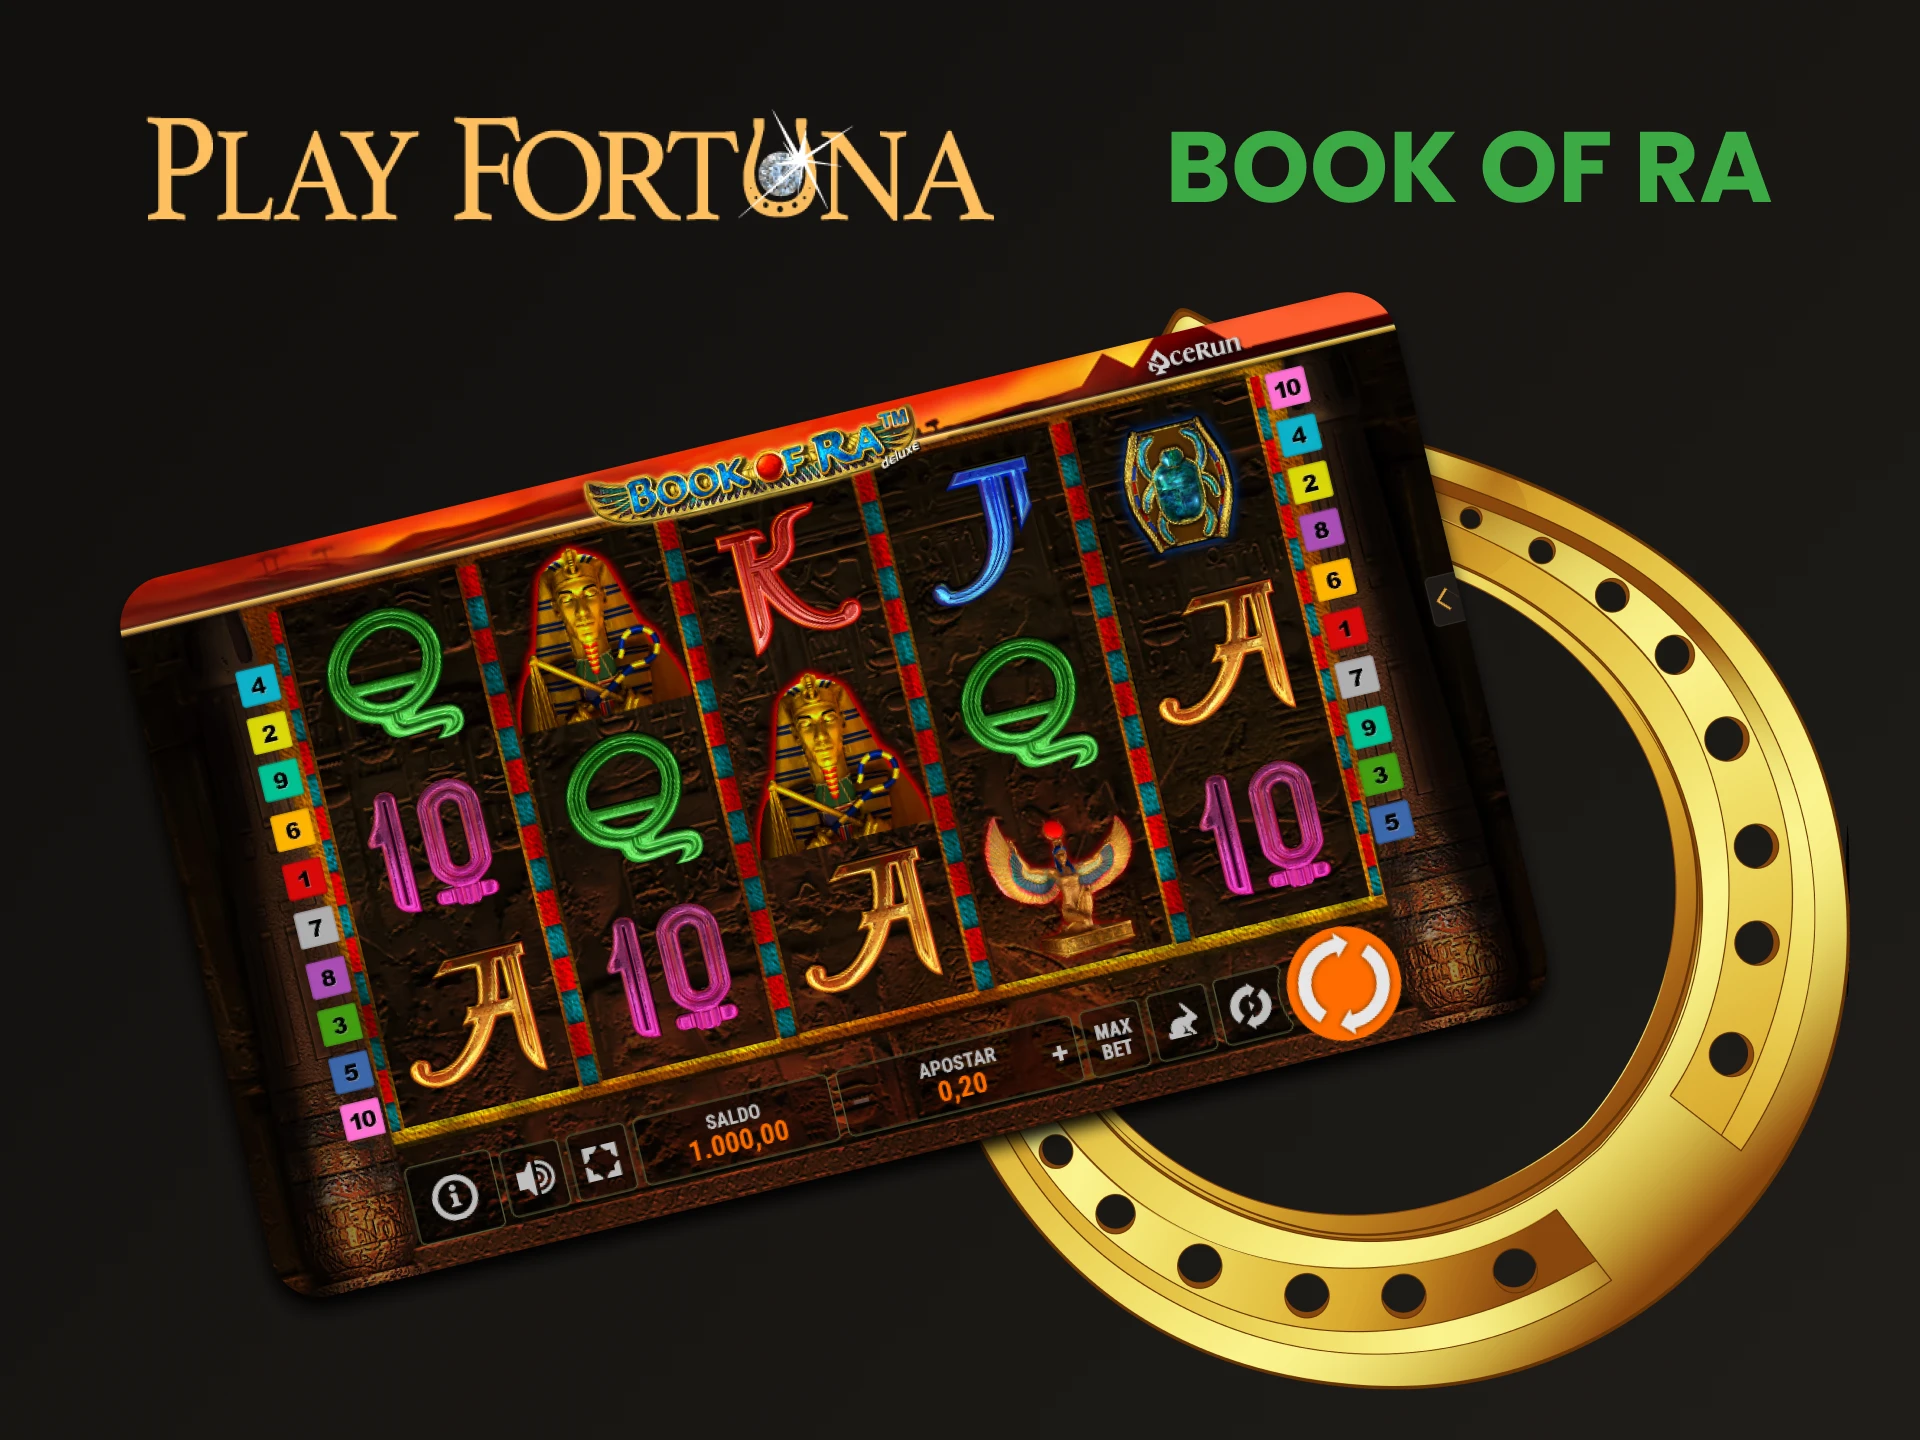 Para jogar slots no Play Fortuna, escolha Book of Ra.